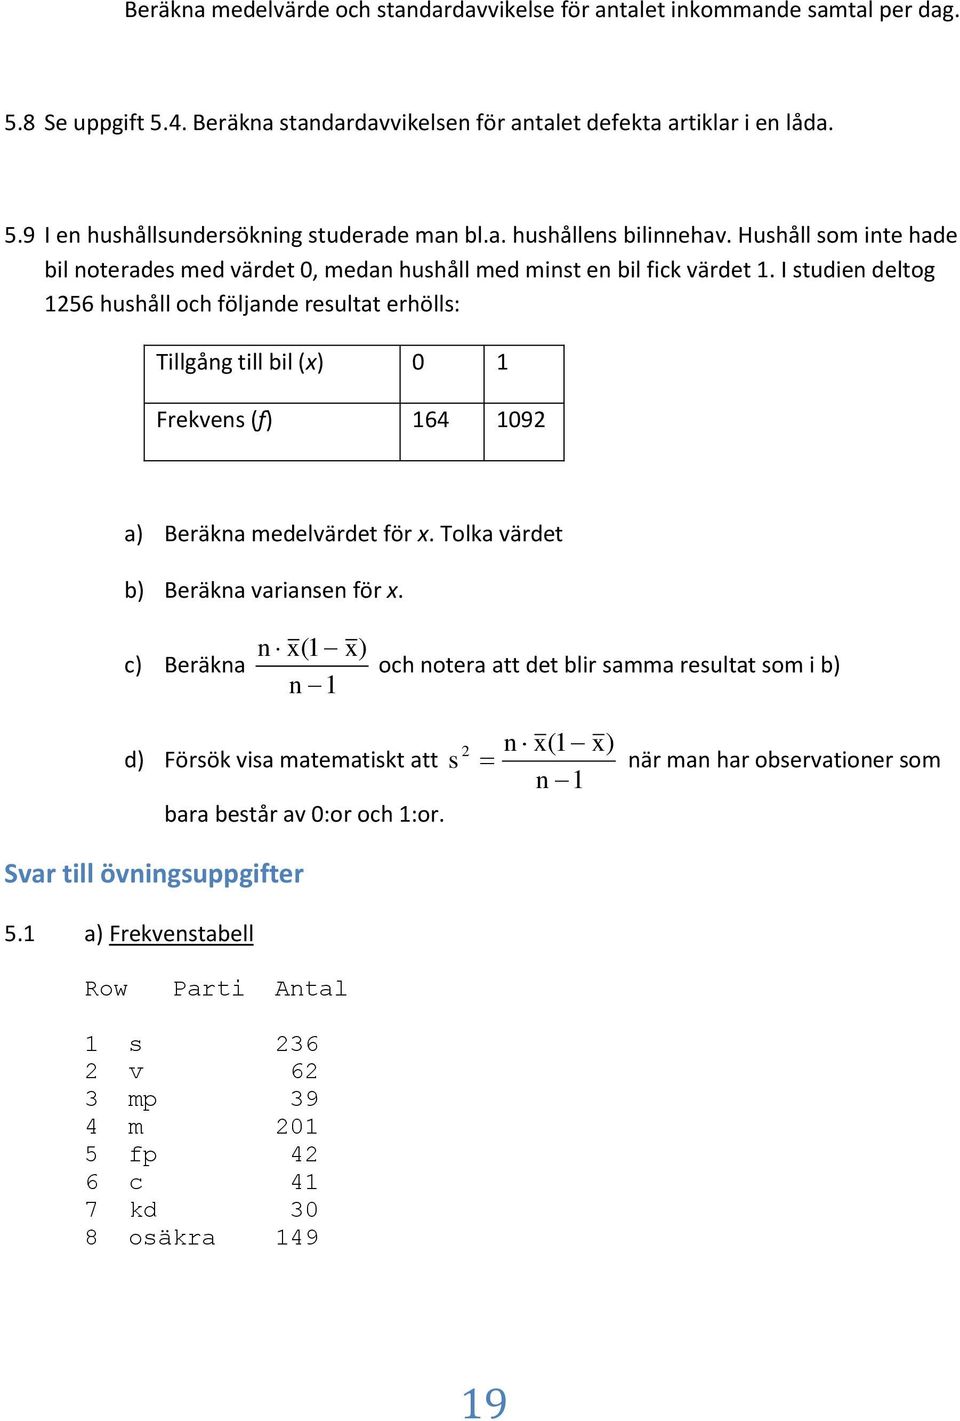 I stude deltog 56 hushåll och följade resultat erhölls: Tllgåg tll bl (x) Frekves (f) 64 9 a) Beräka medelvärdet för x. Tolka värdet b) Beräka varase för x.